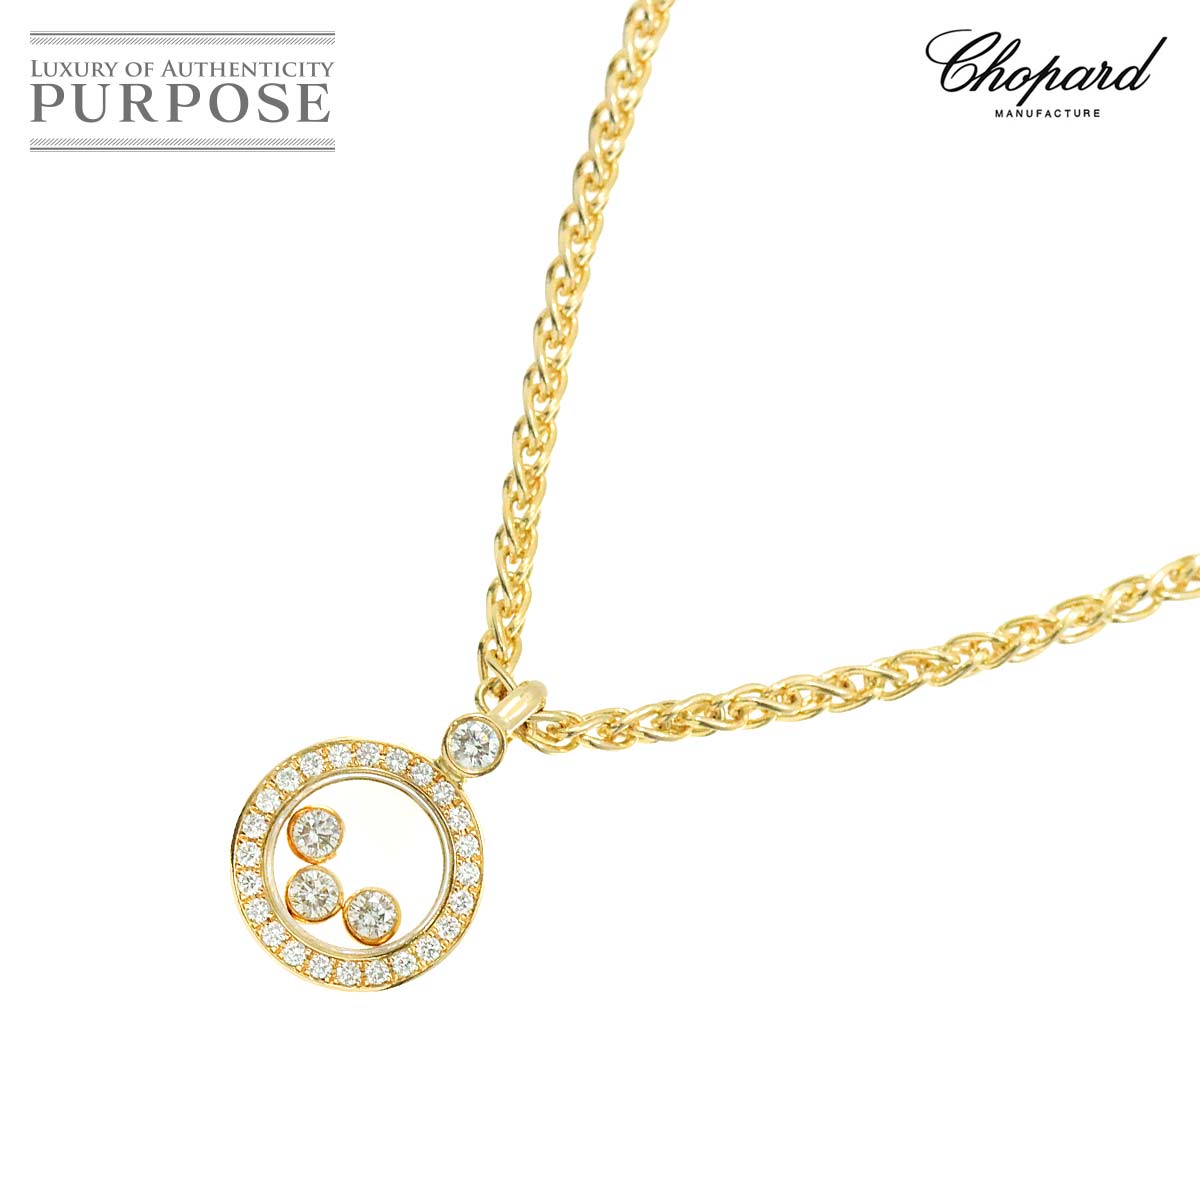 【新品同様】 ショパール Chopard ハッピーダイヤ ネックレス 42cm K18 YG イエローゴールド 750 Happy Diamond Necklace【中古】